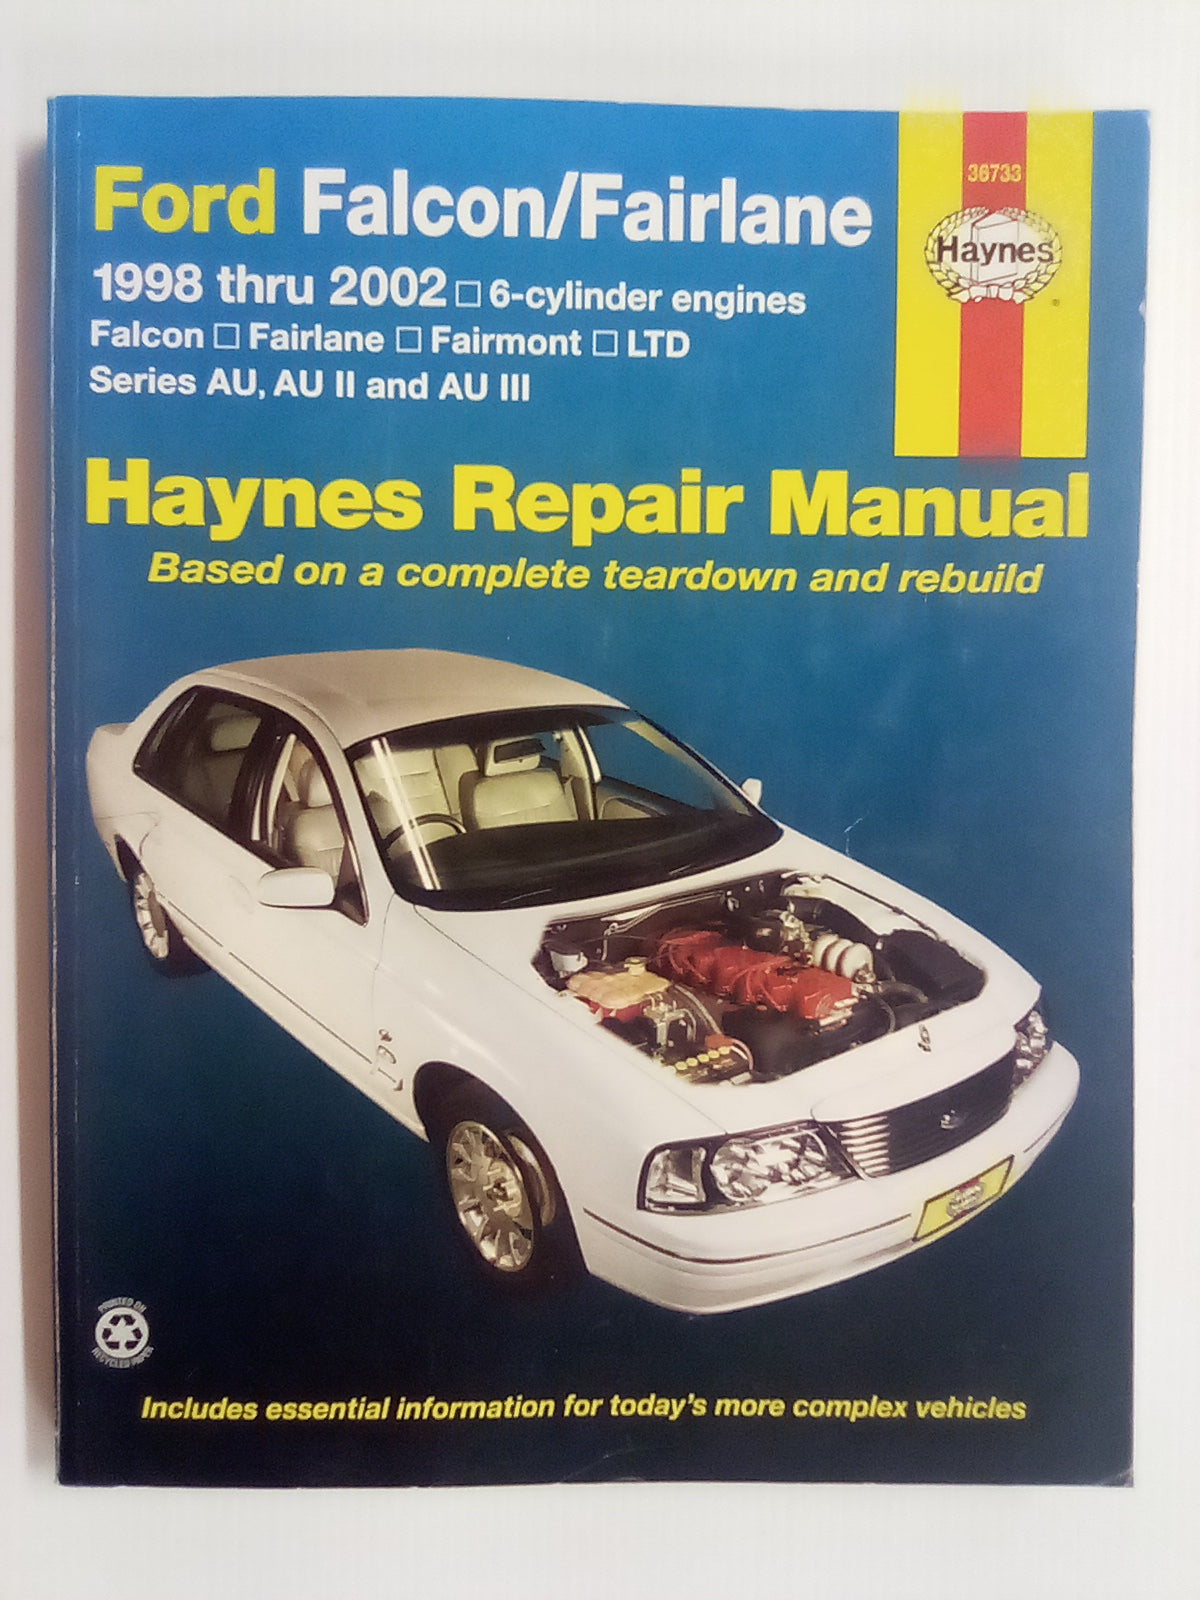 Ford Falcon & Fairlane 1998-2002 Haynes Repair Manual